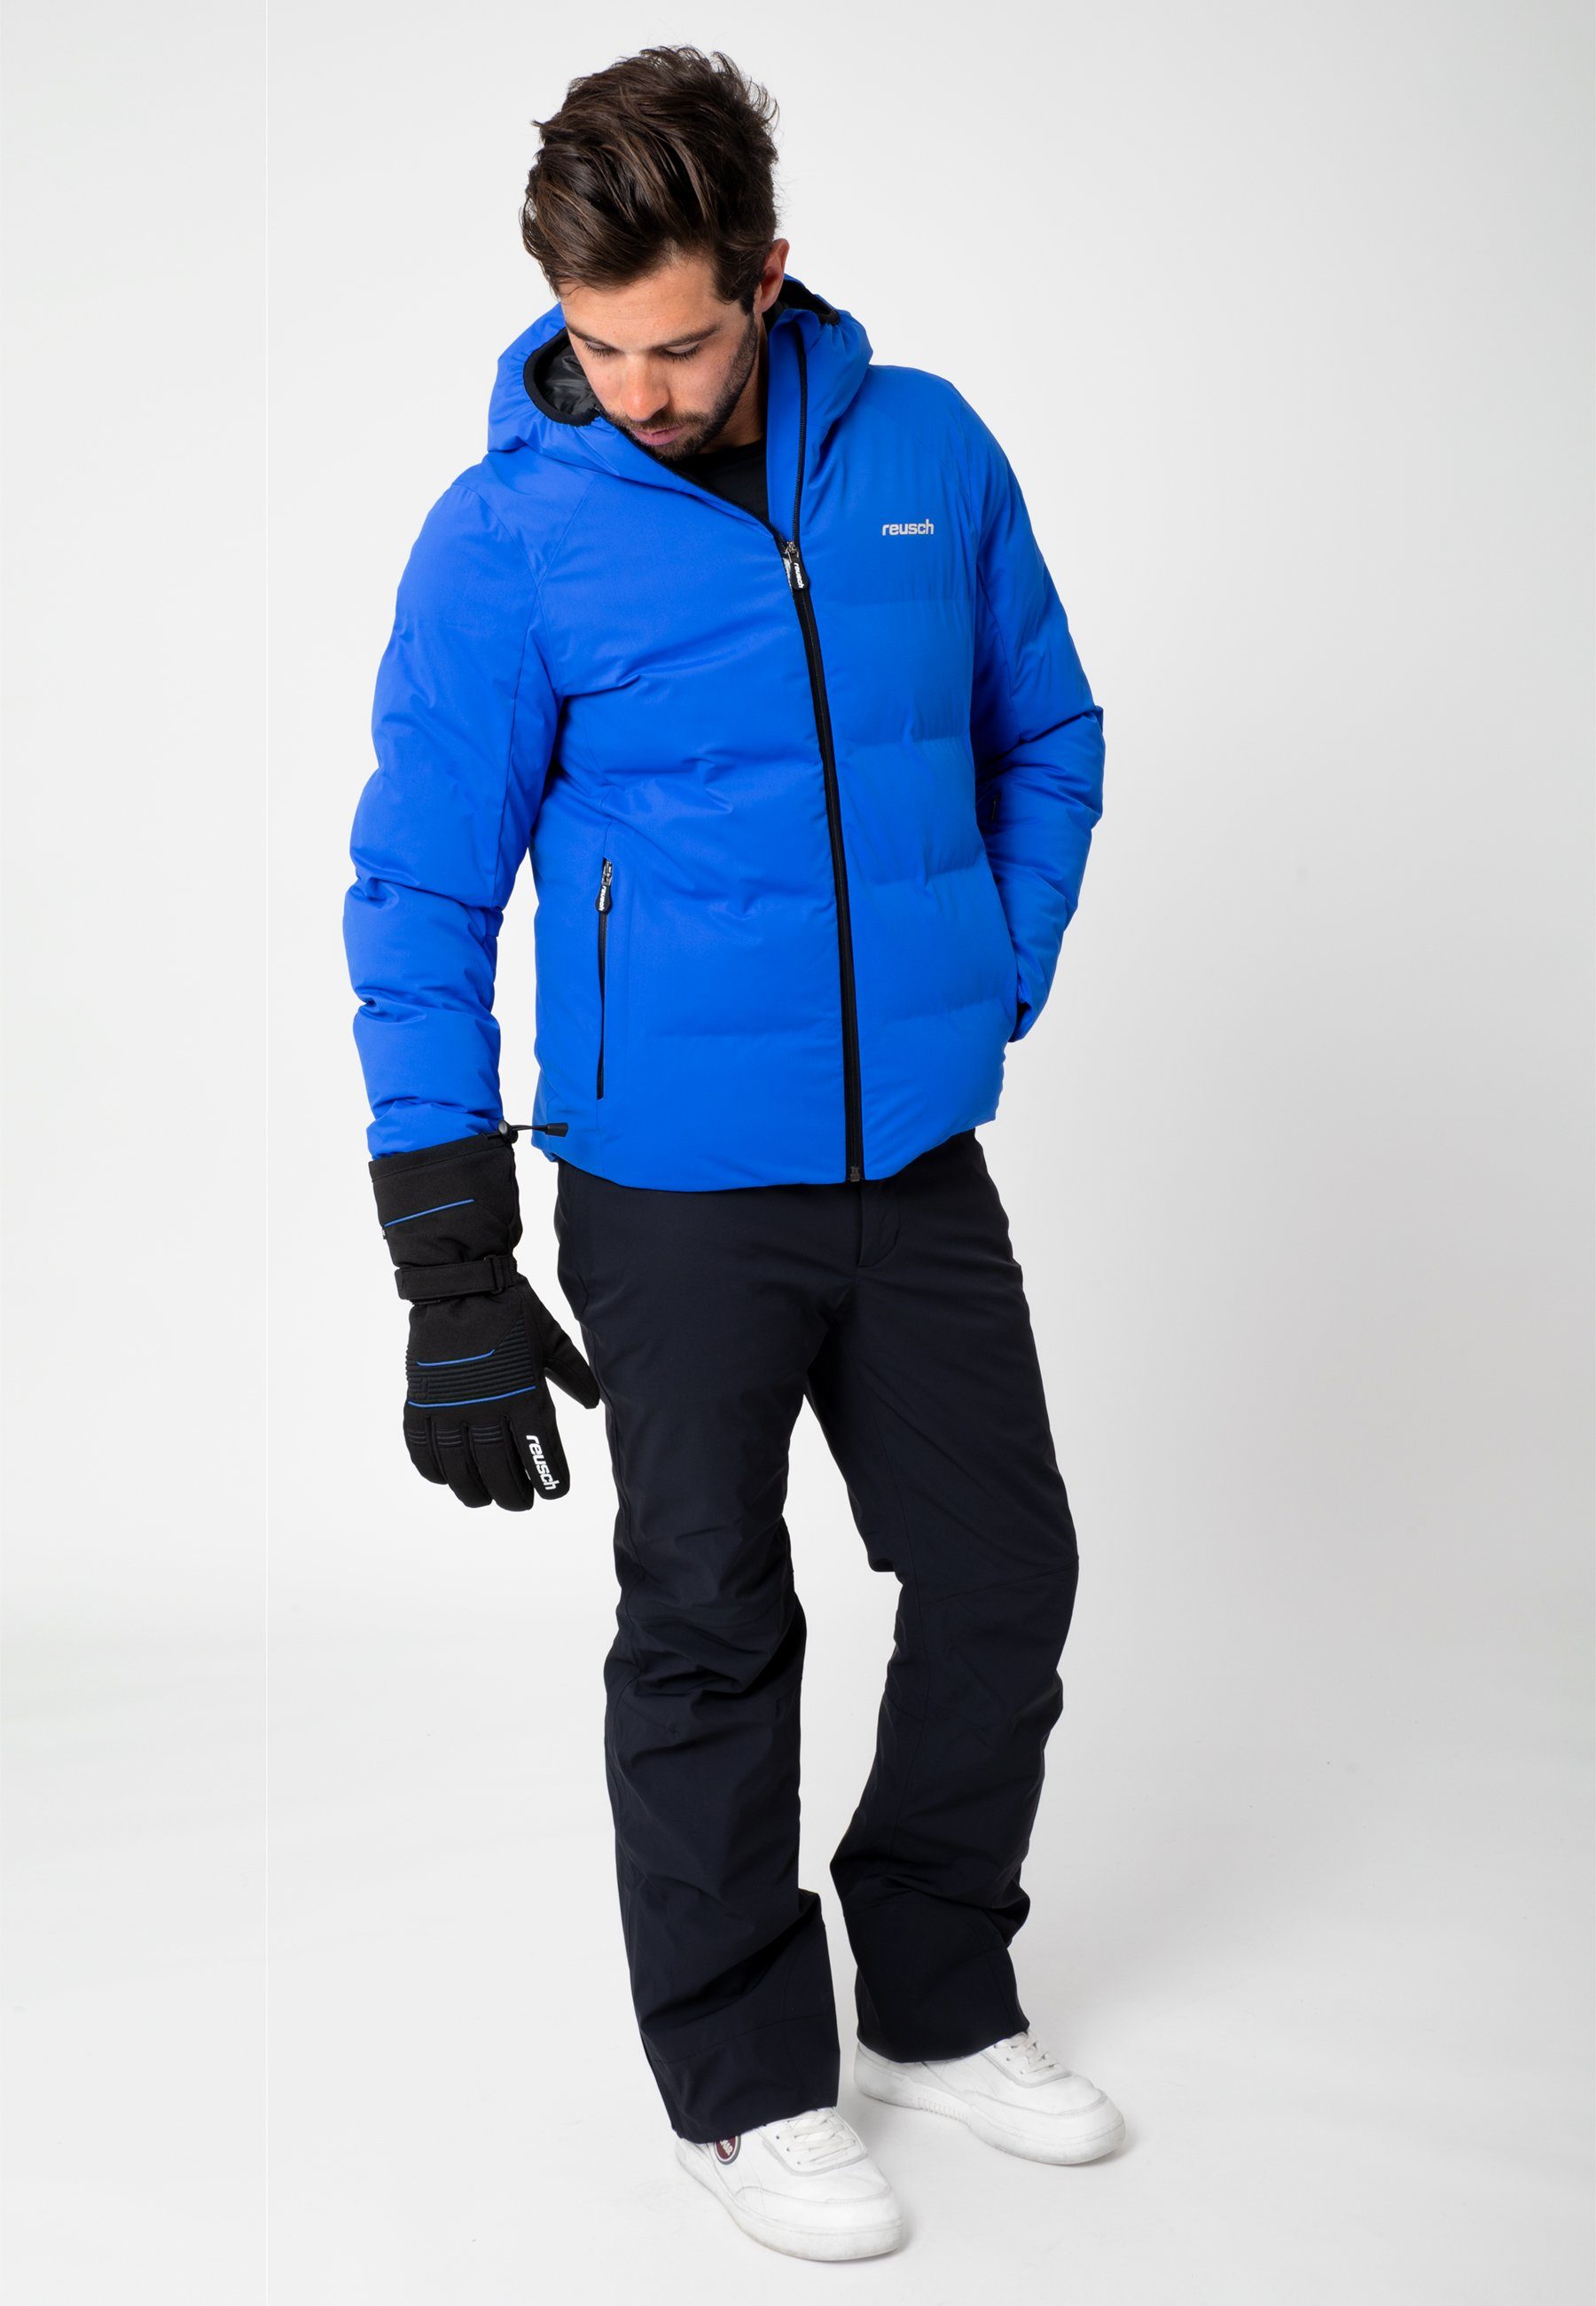 Reusch Skihandschuhe Crosby R-TEX® XT in sportlichem blau-schwarz Design